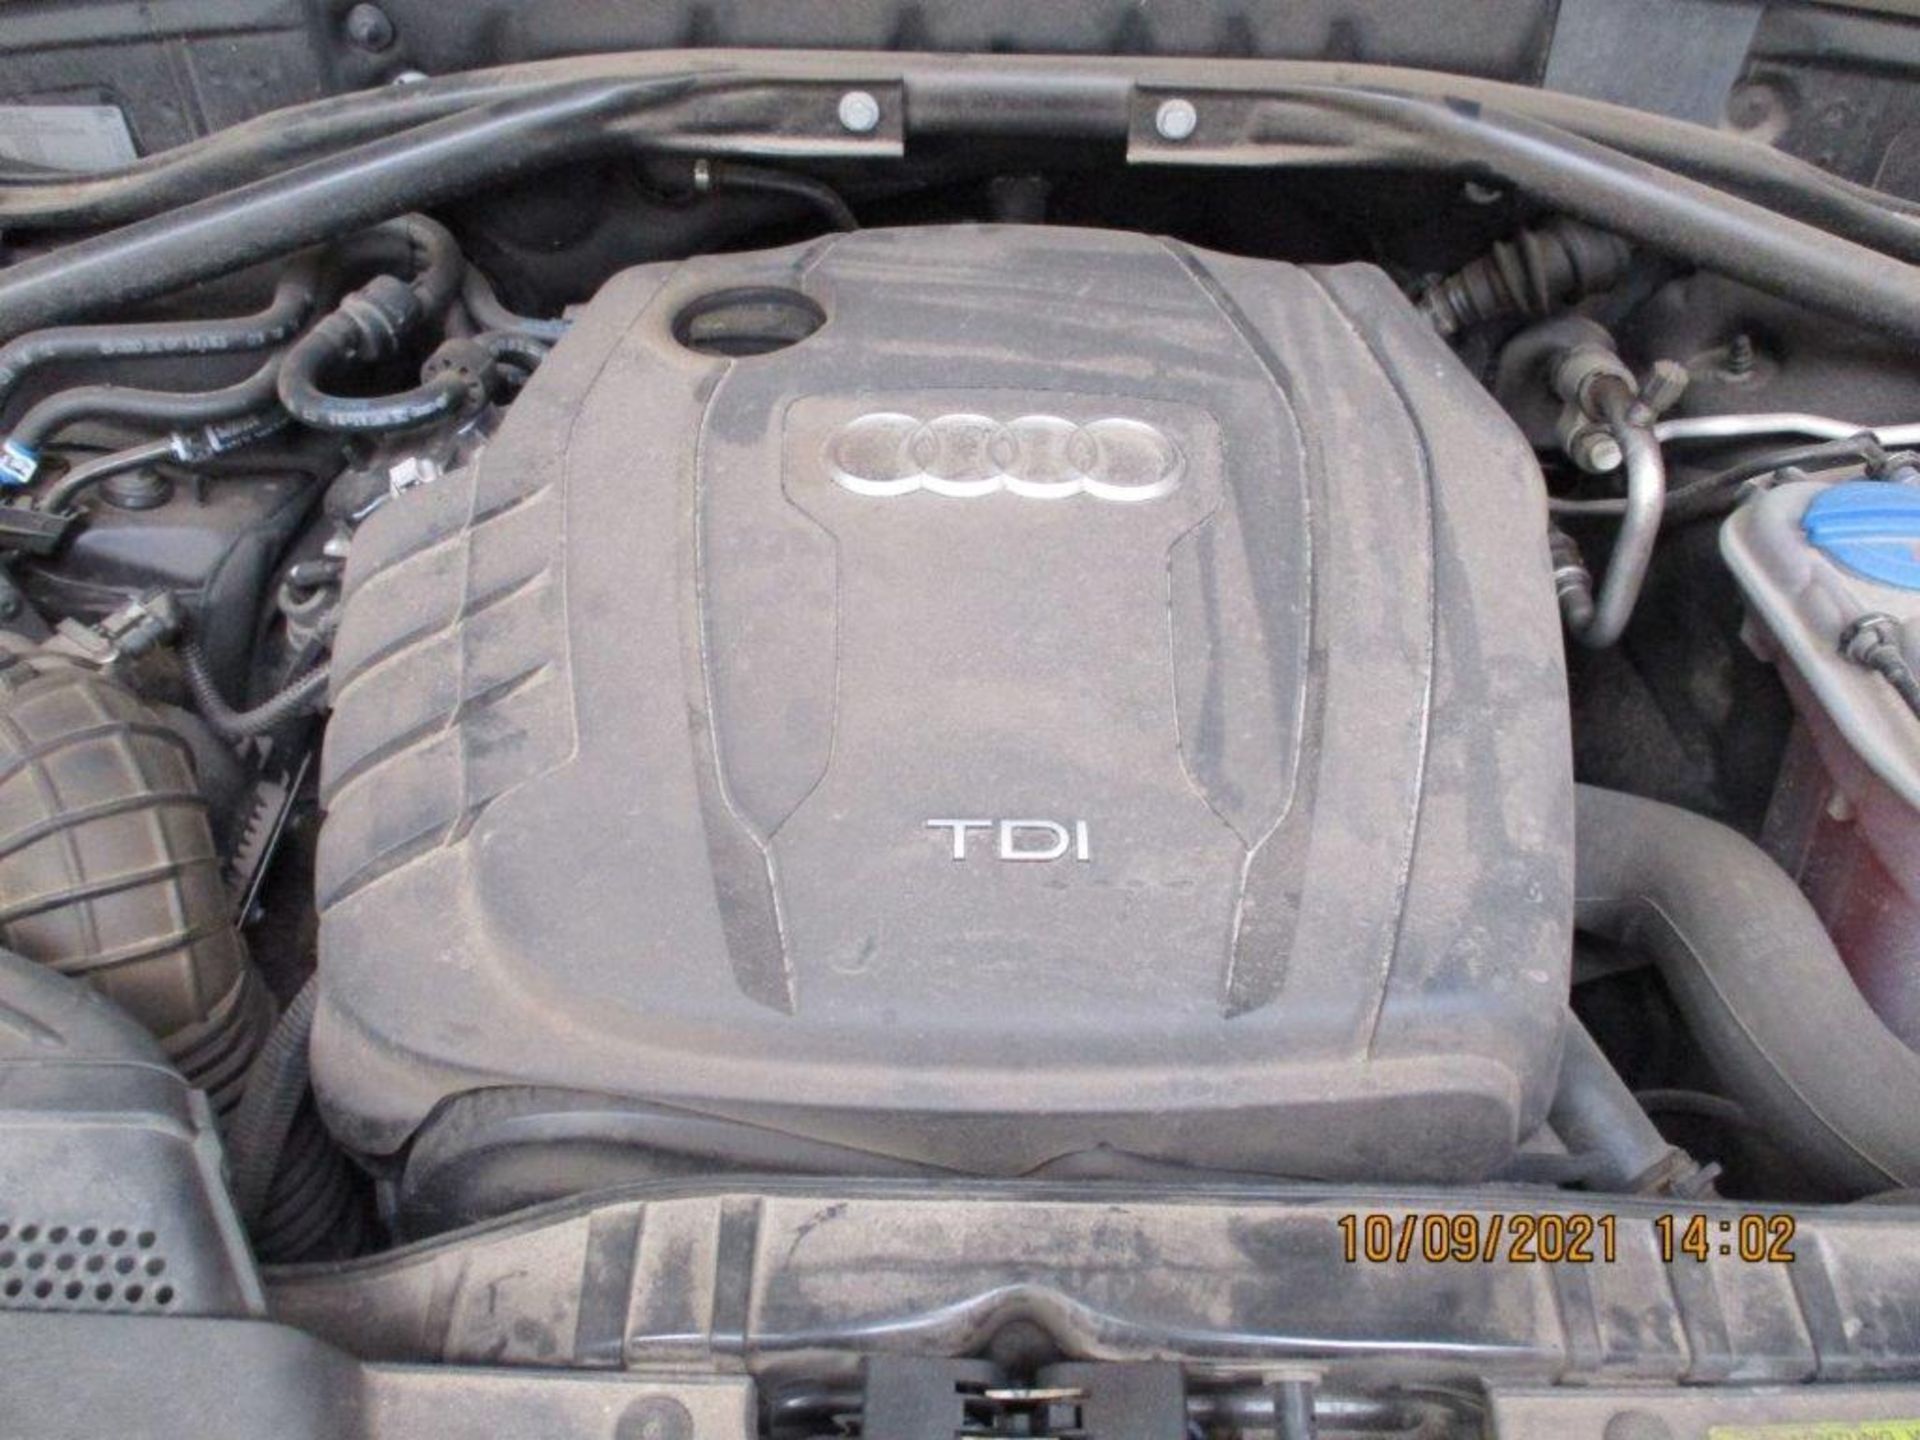 64 14 Audi Q5 SE TDI Quattro - Image 6 of 24